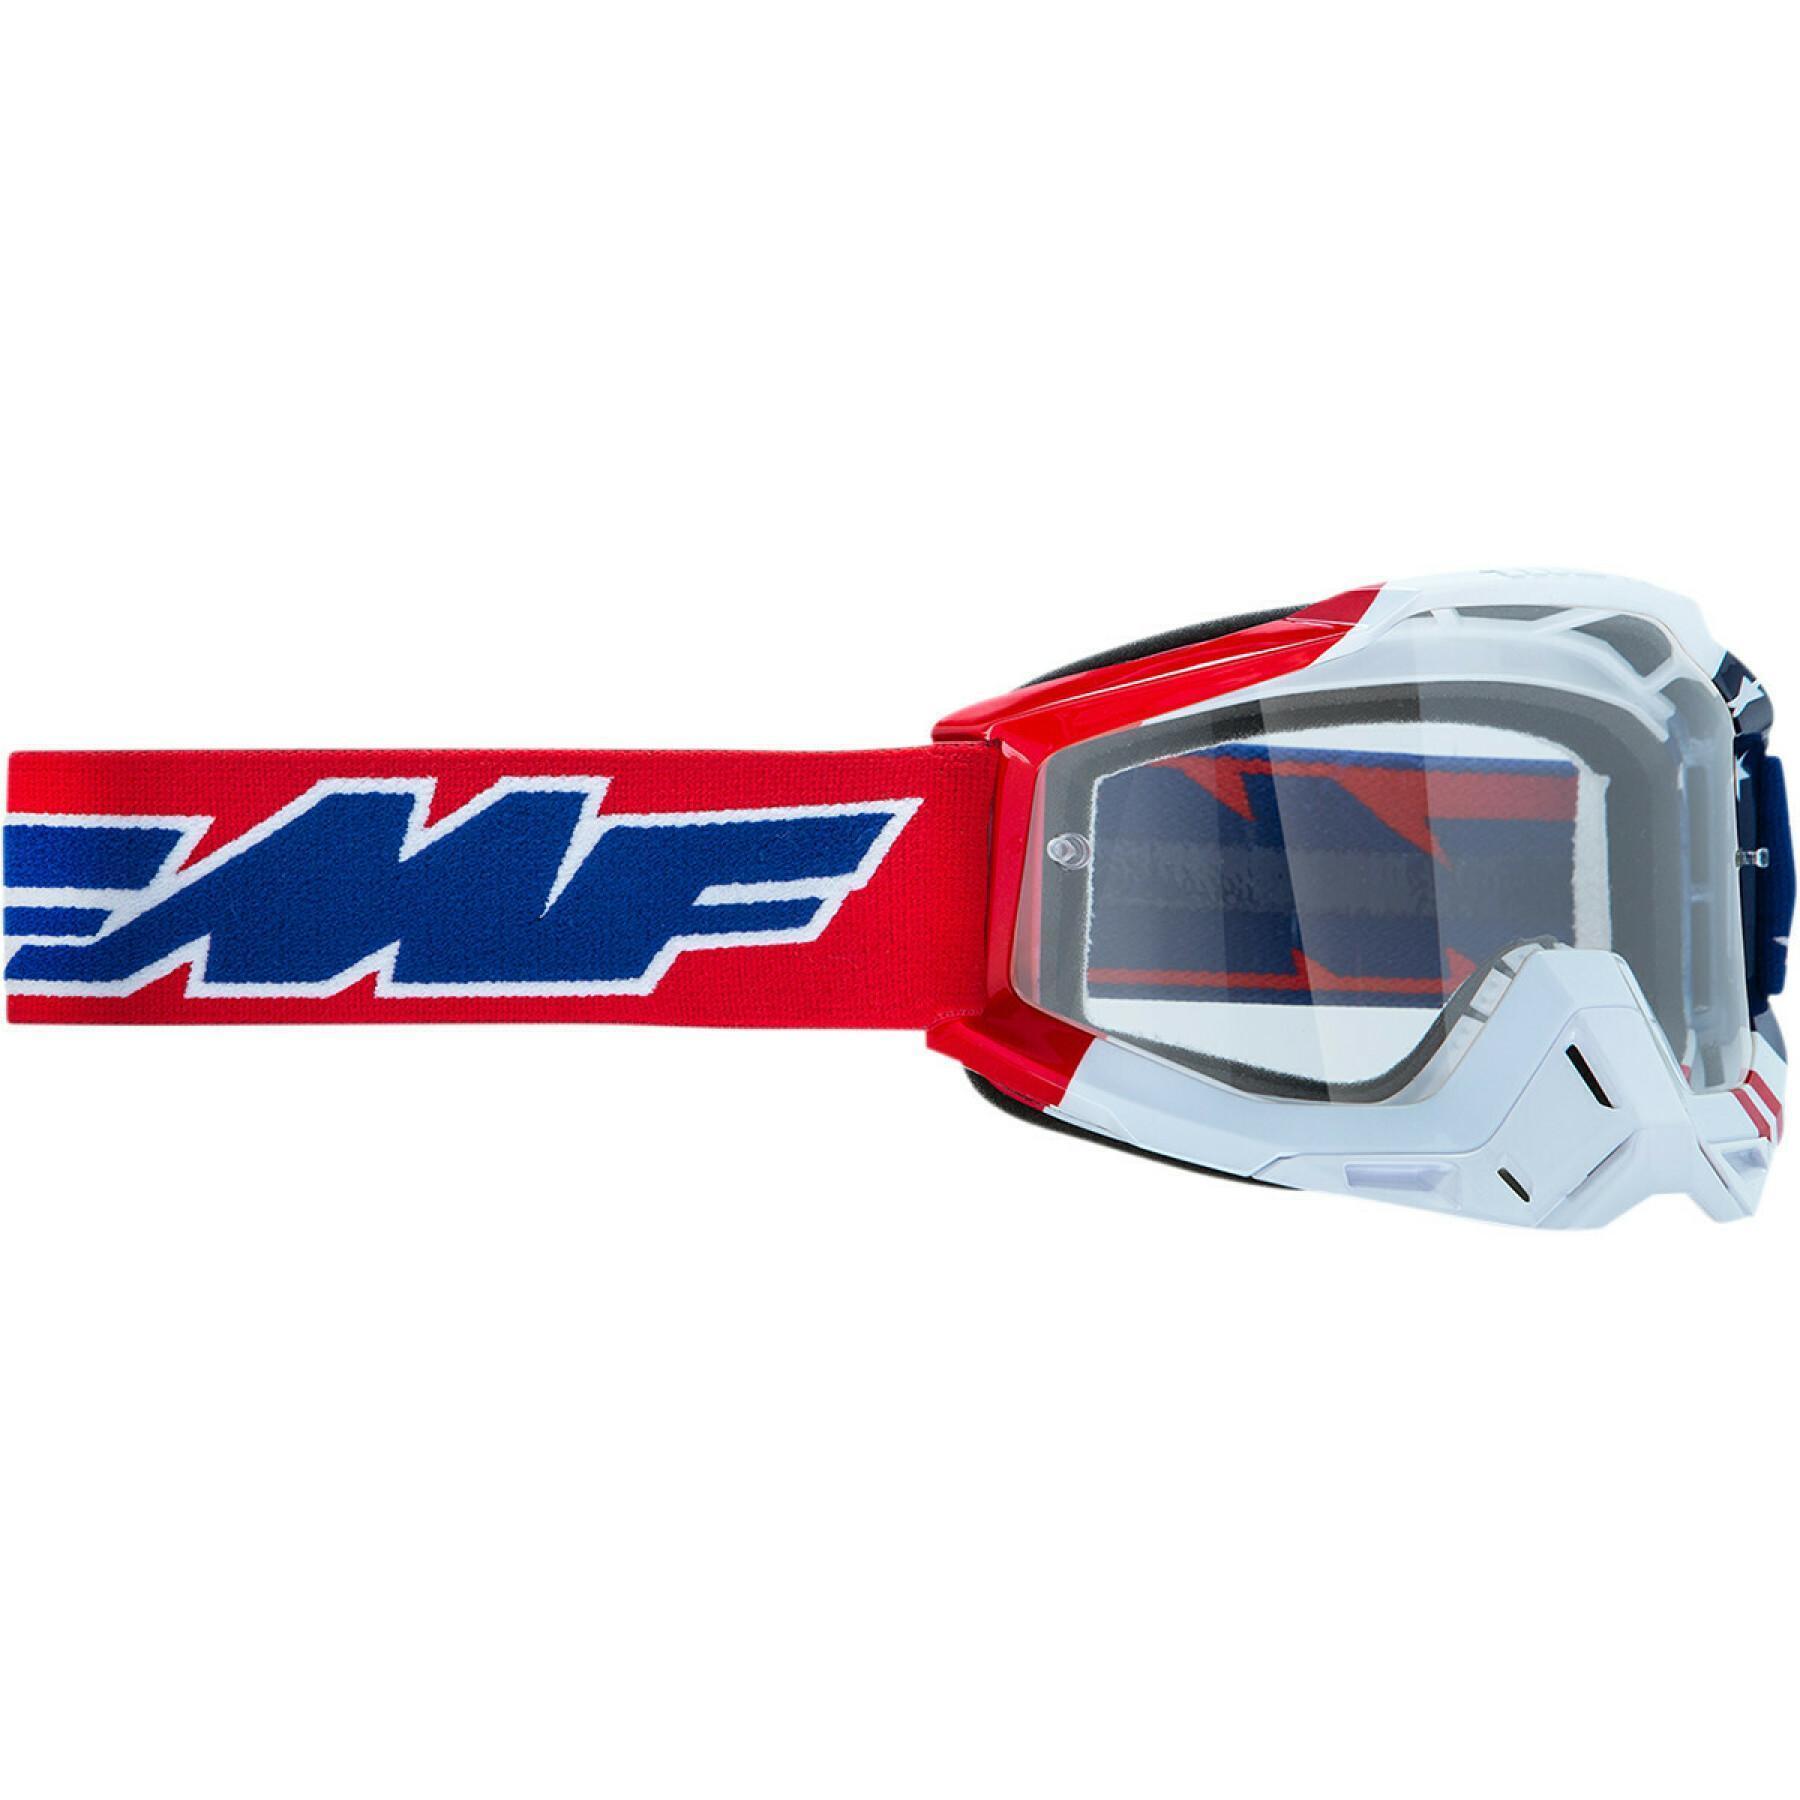 Skyddsglasögon för motocross FMF Vision us of a clr